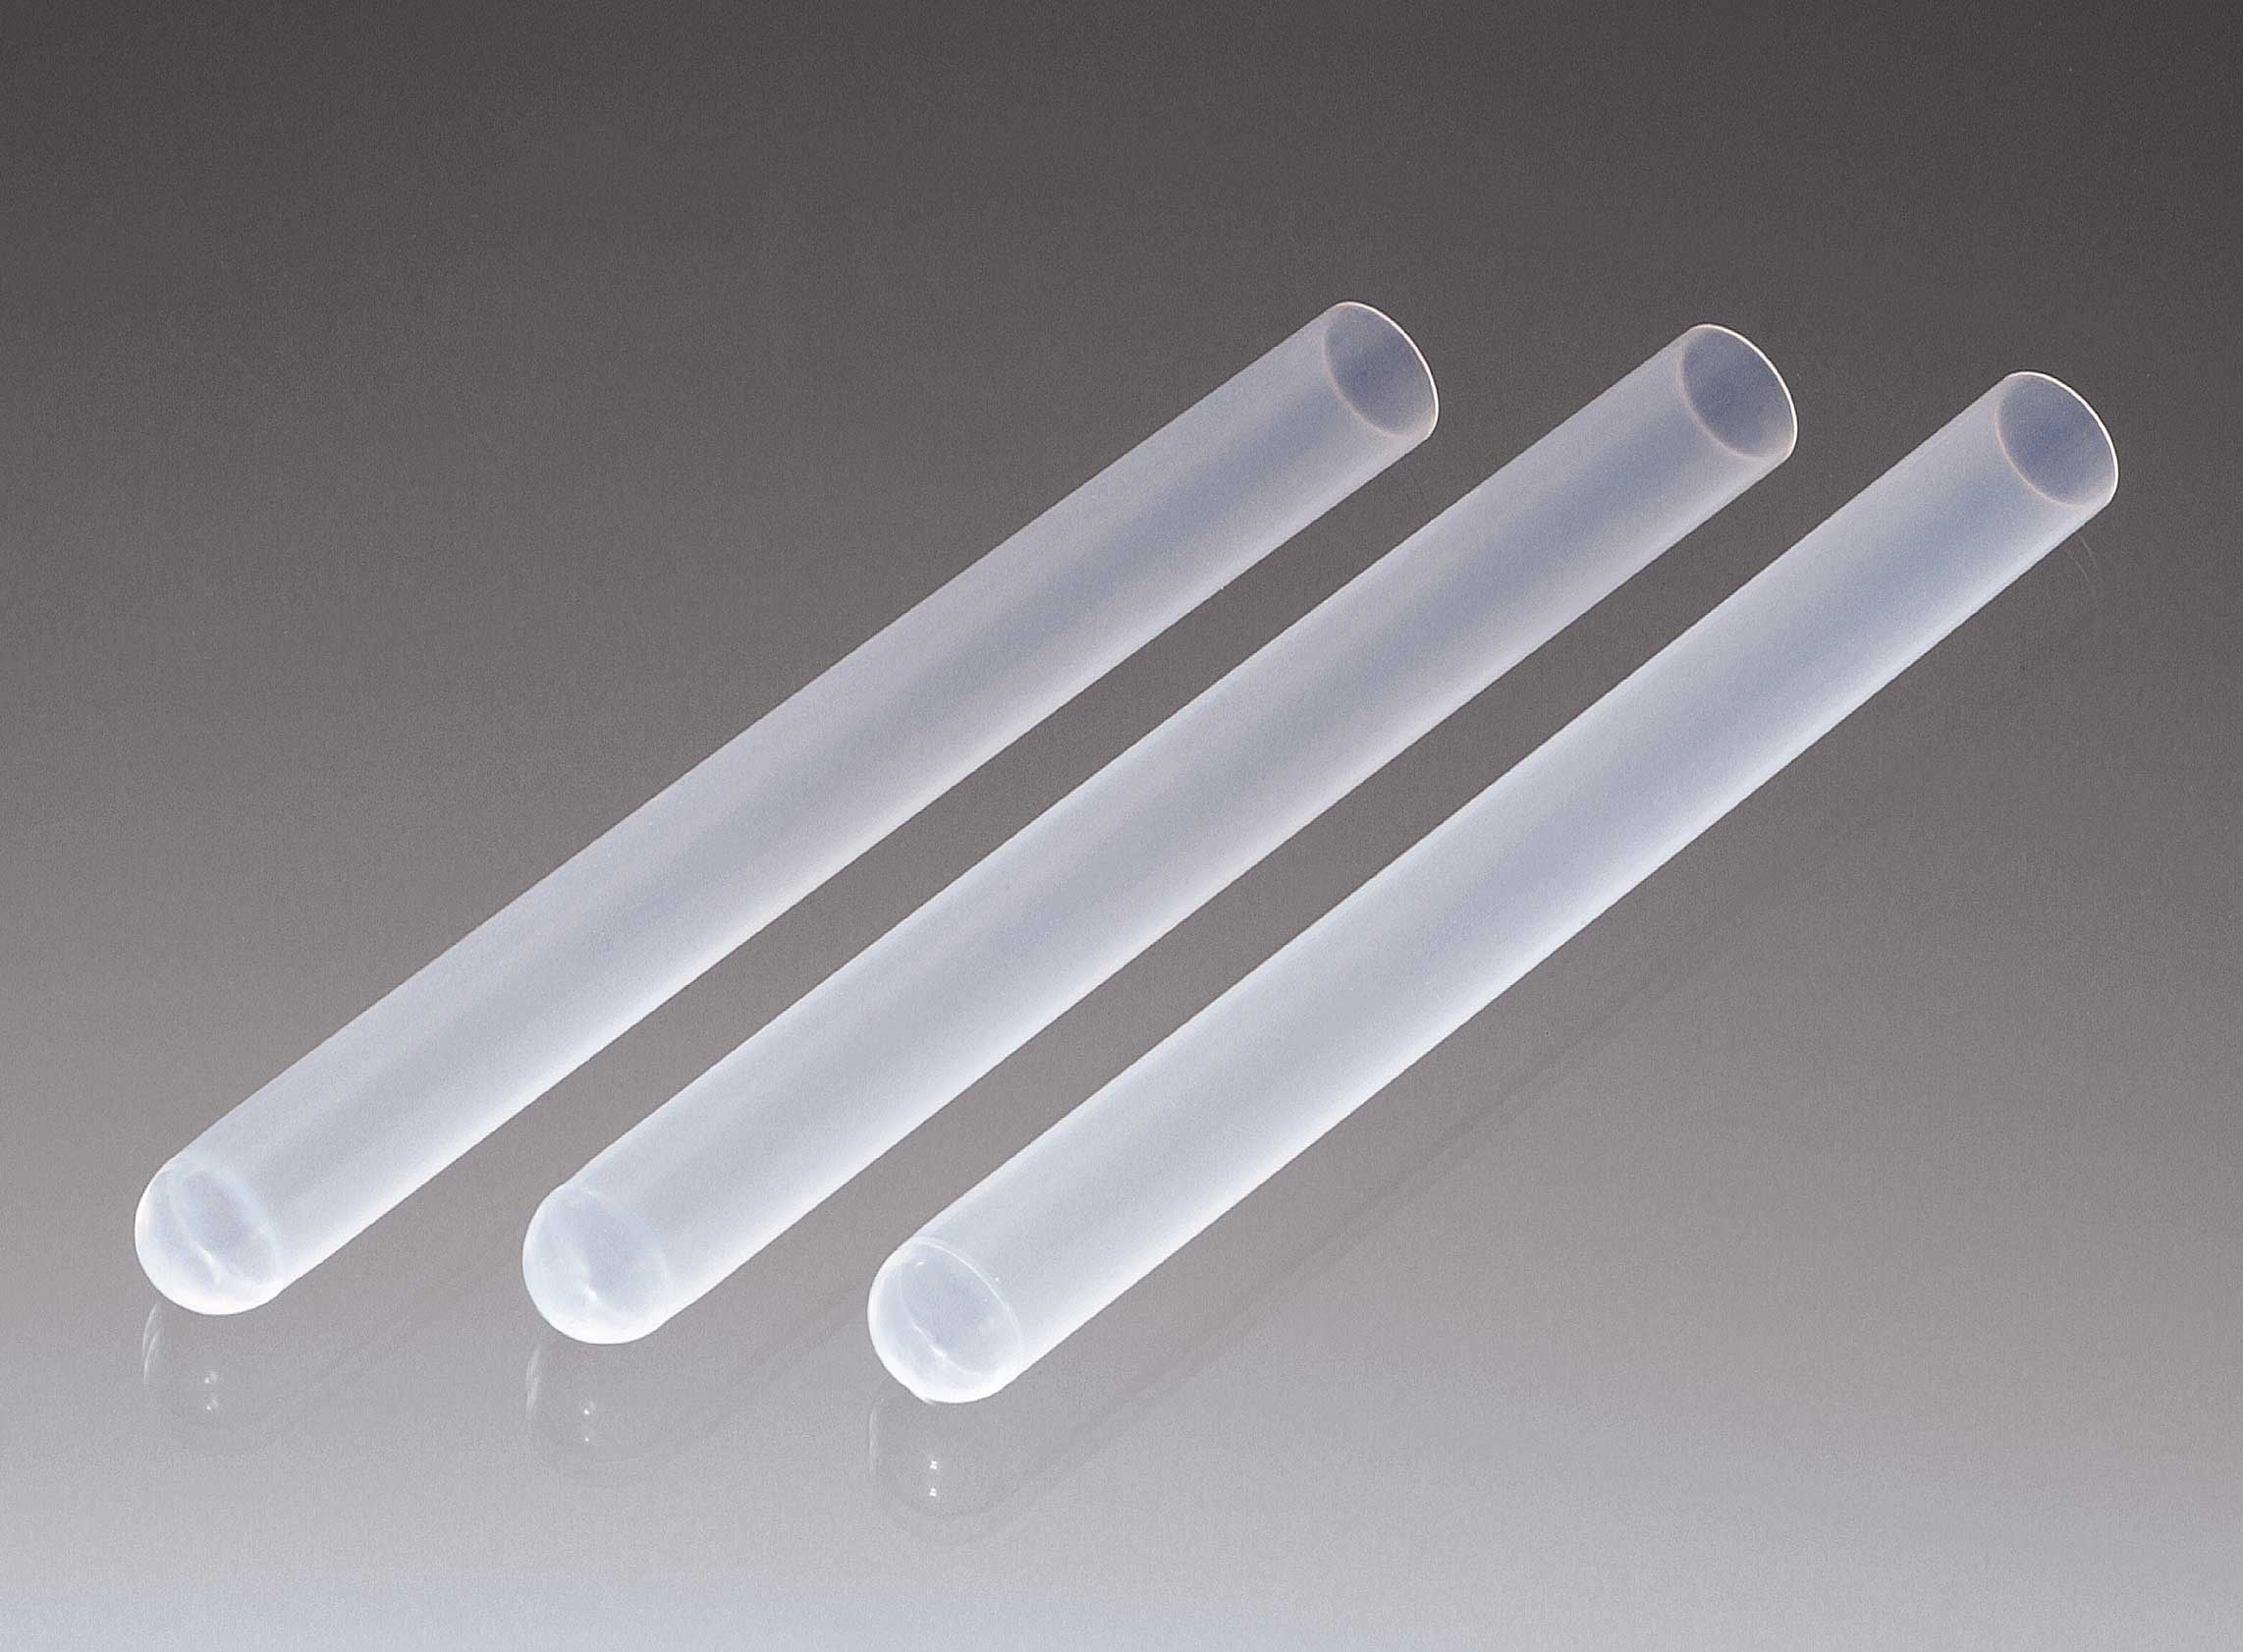 Δοκιμαστικοί σωλήνες -Test tubes με ή χωρίς πώμα, αποστειρωμένοι και μή 